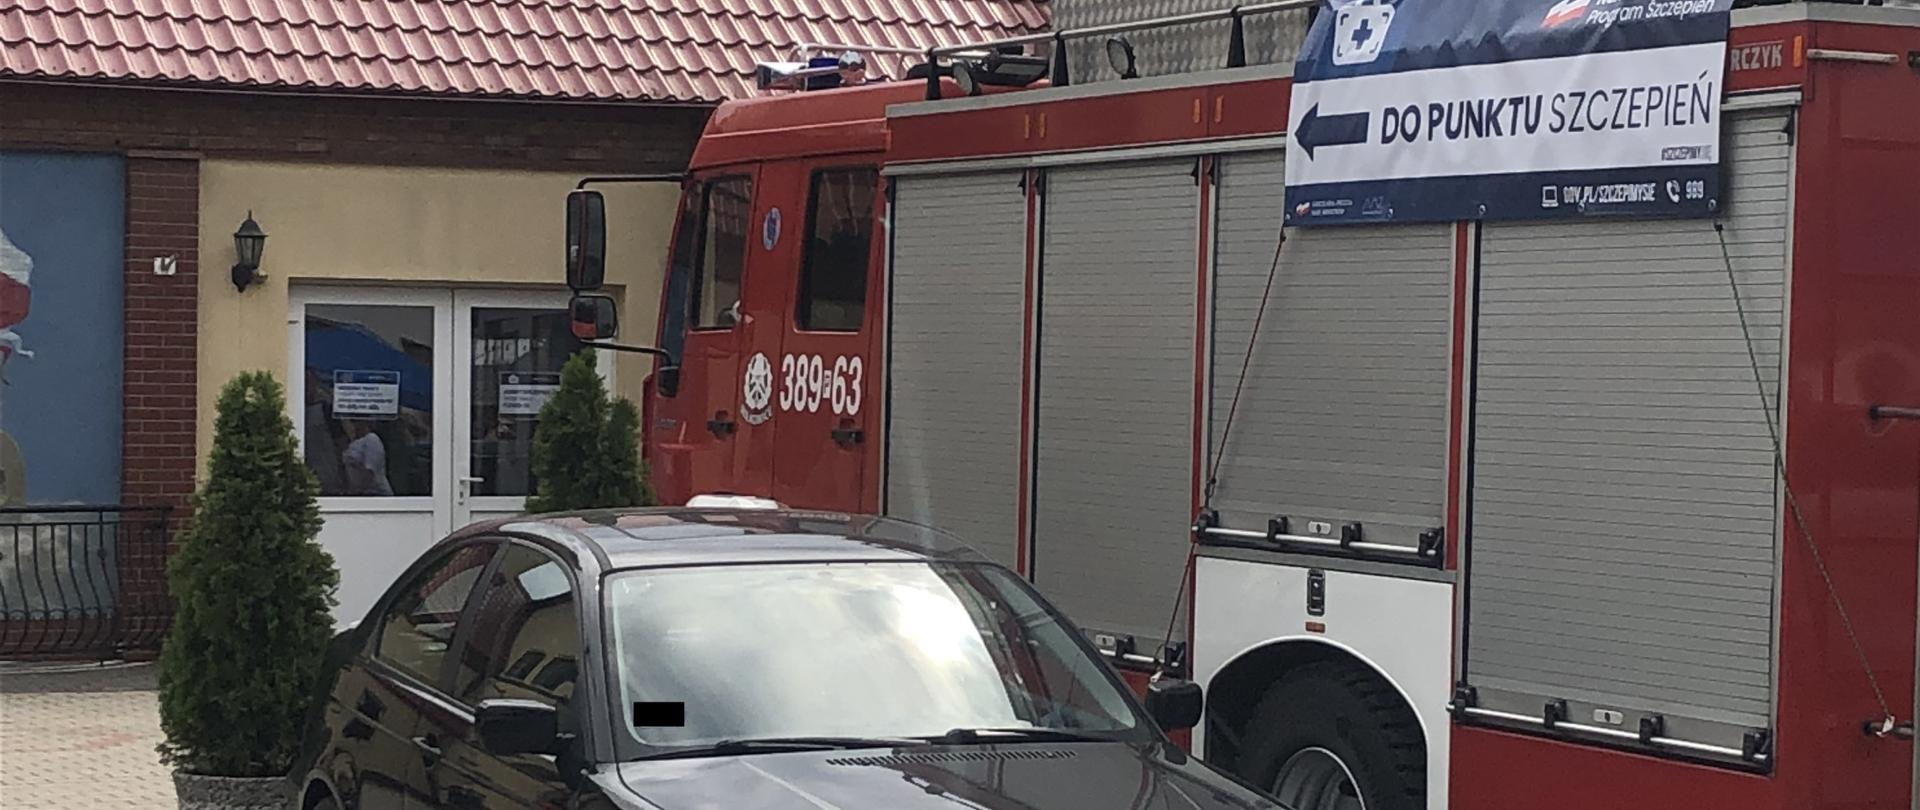 Samochód strażacki i samochód osobowy stoją na poboczu drogi przed budynkiem.